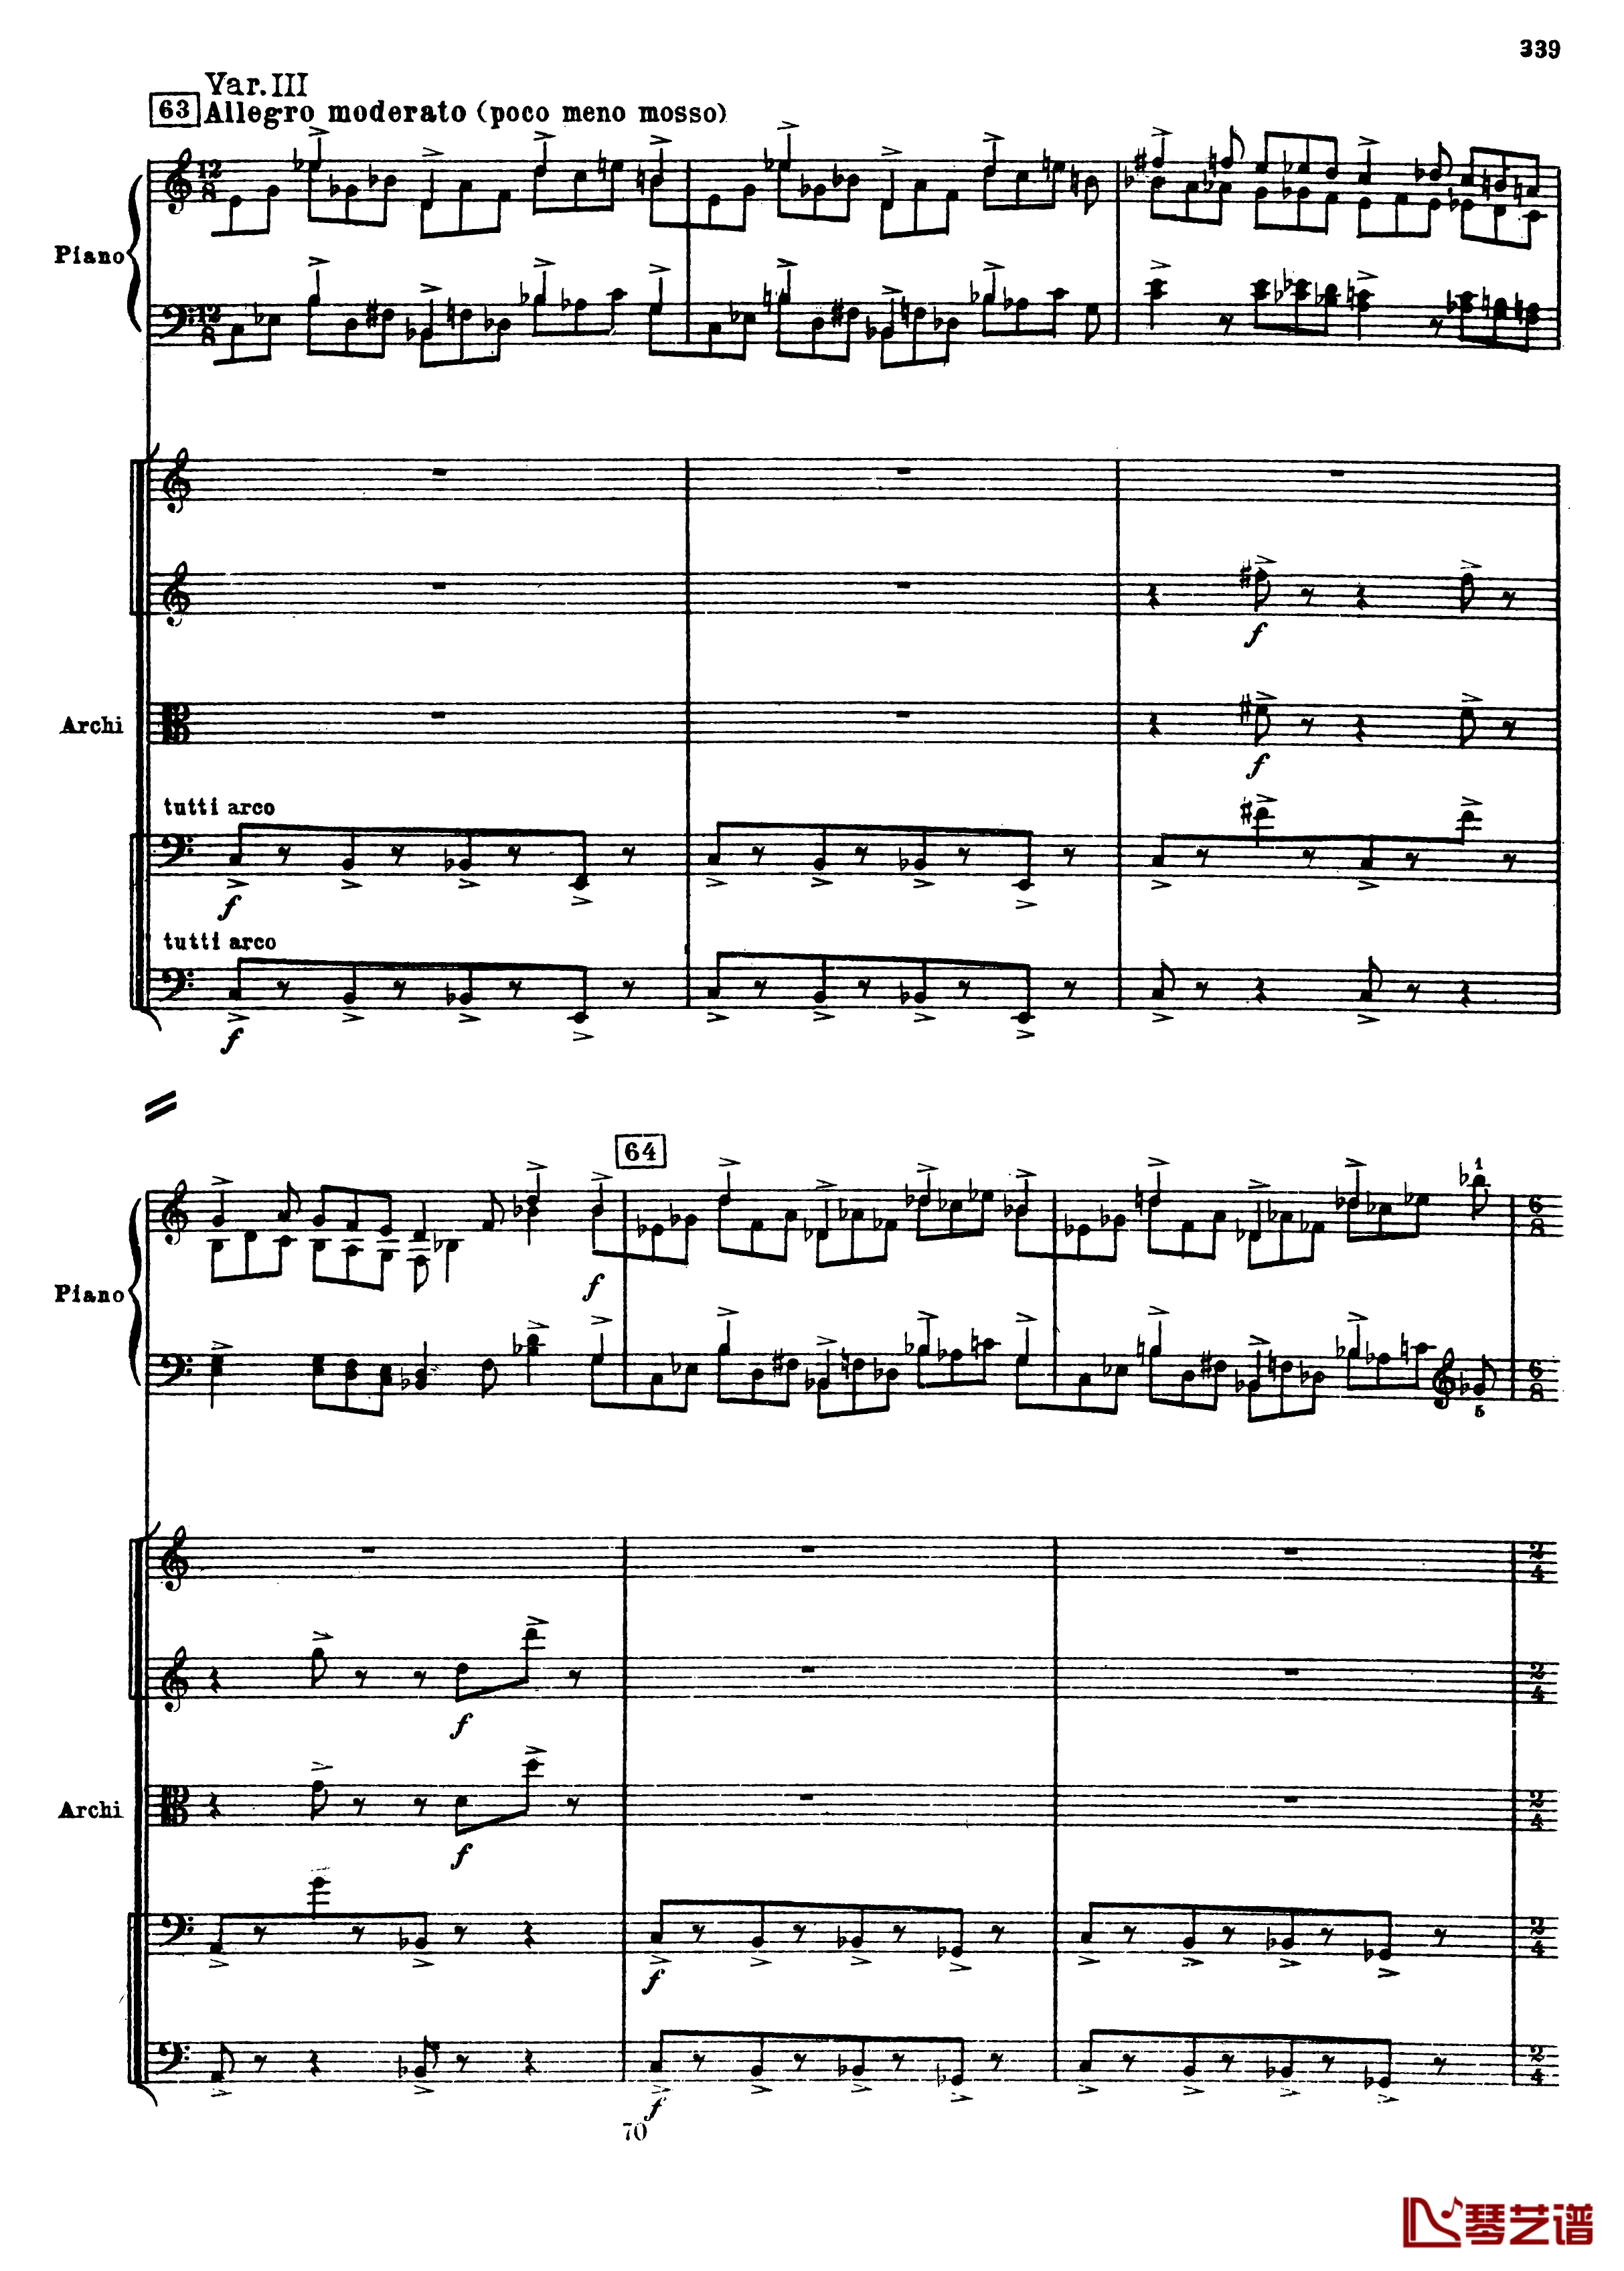 普罗科菲耶夫第三钢琴协奏曲钢琴谱-总谱-普罗科非耶夫71